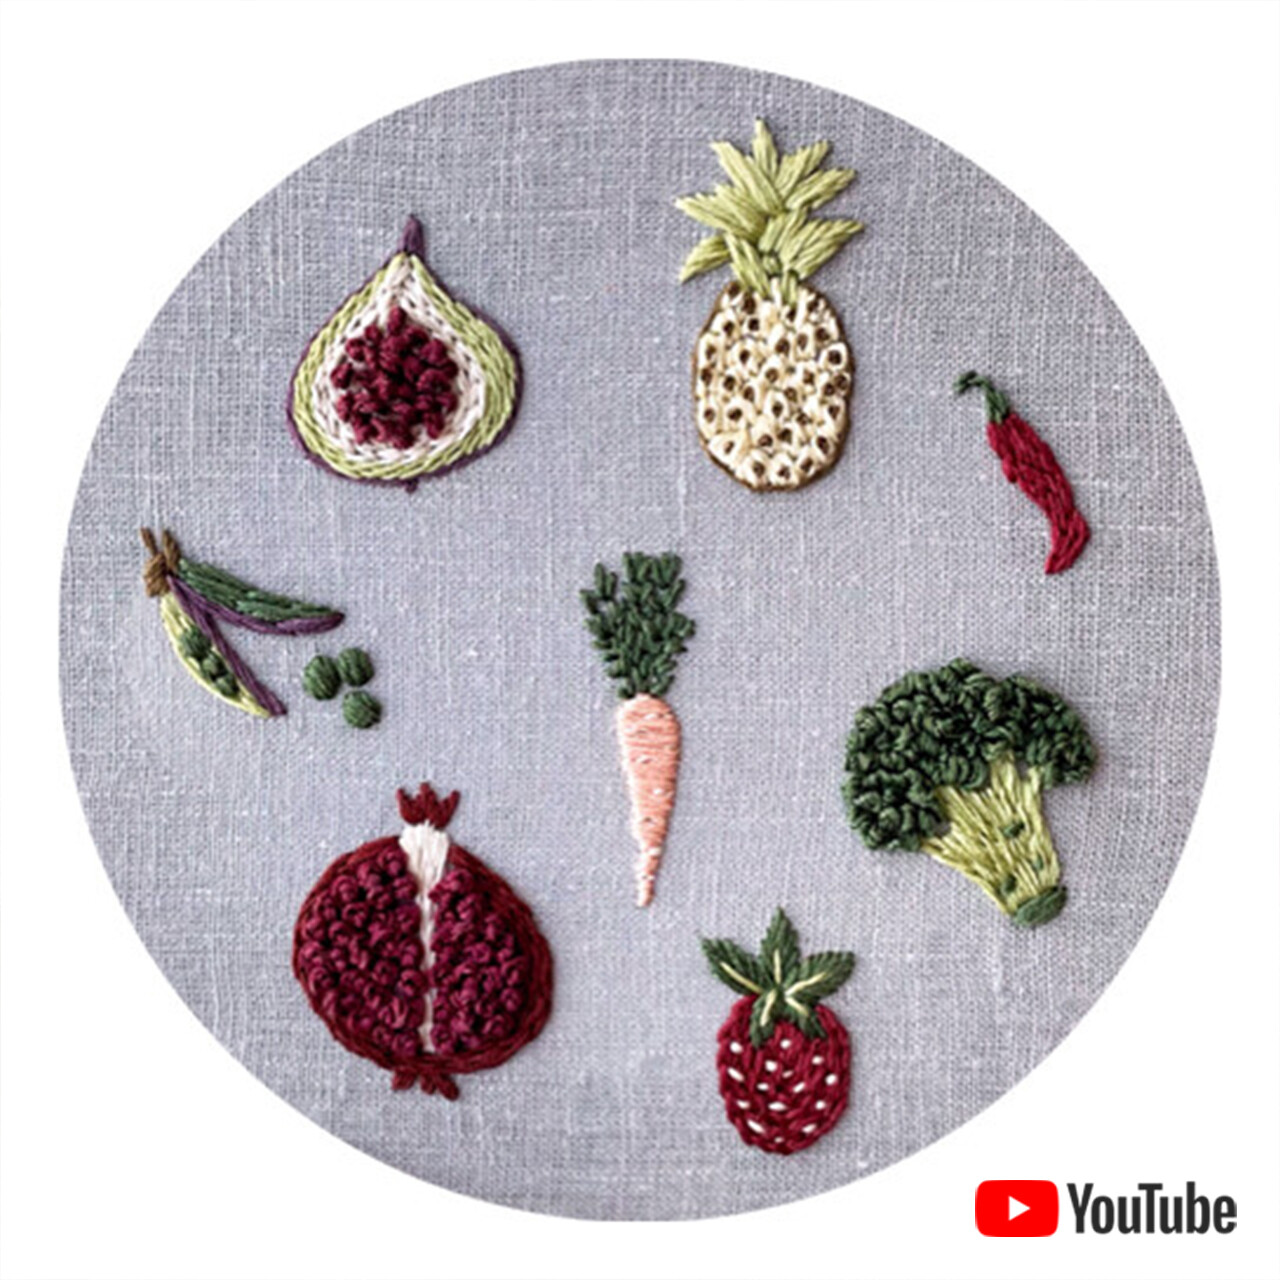 Схема для вышивки+ видео урок "Фрукты и овощи 1"